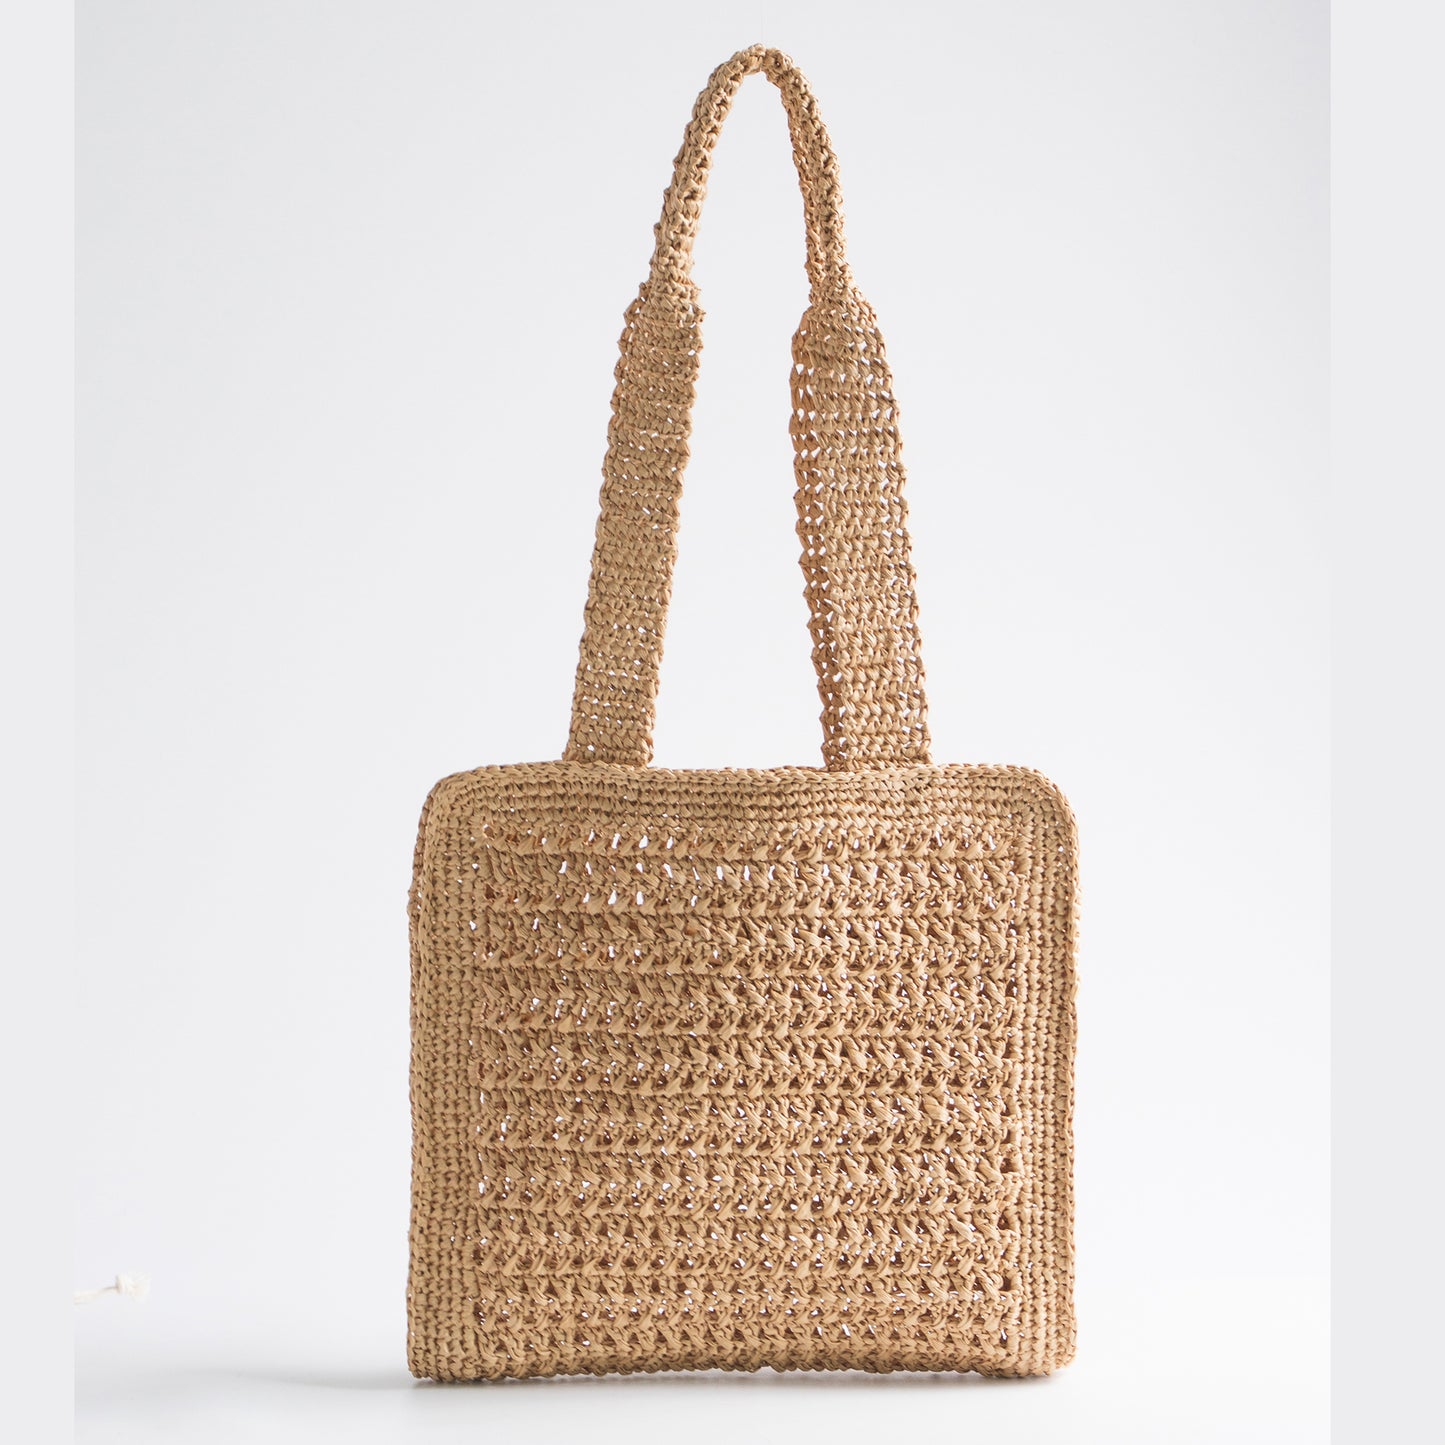 DIY Package | Lattan Breeze Bag